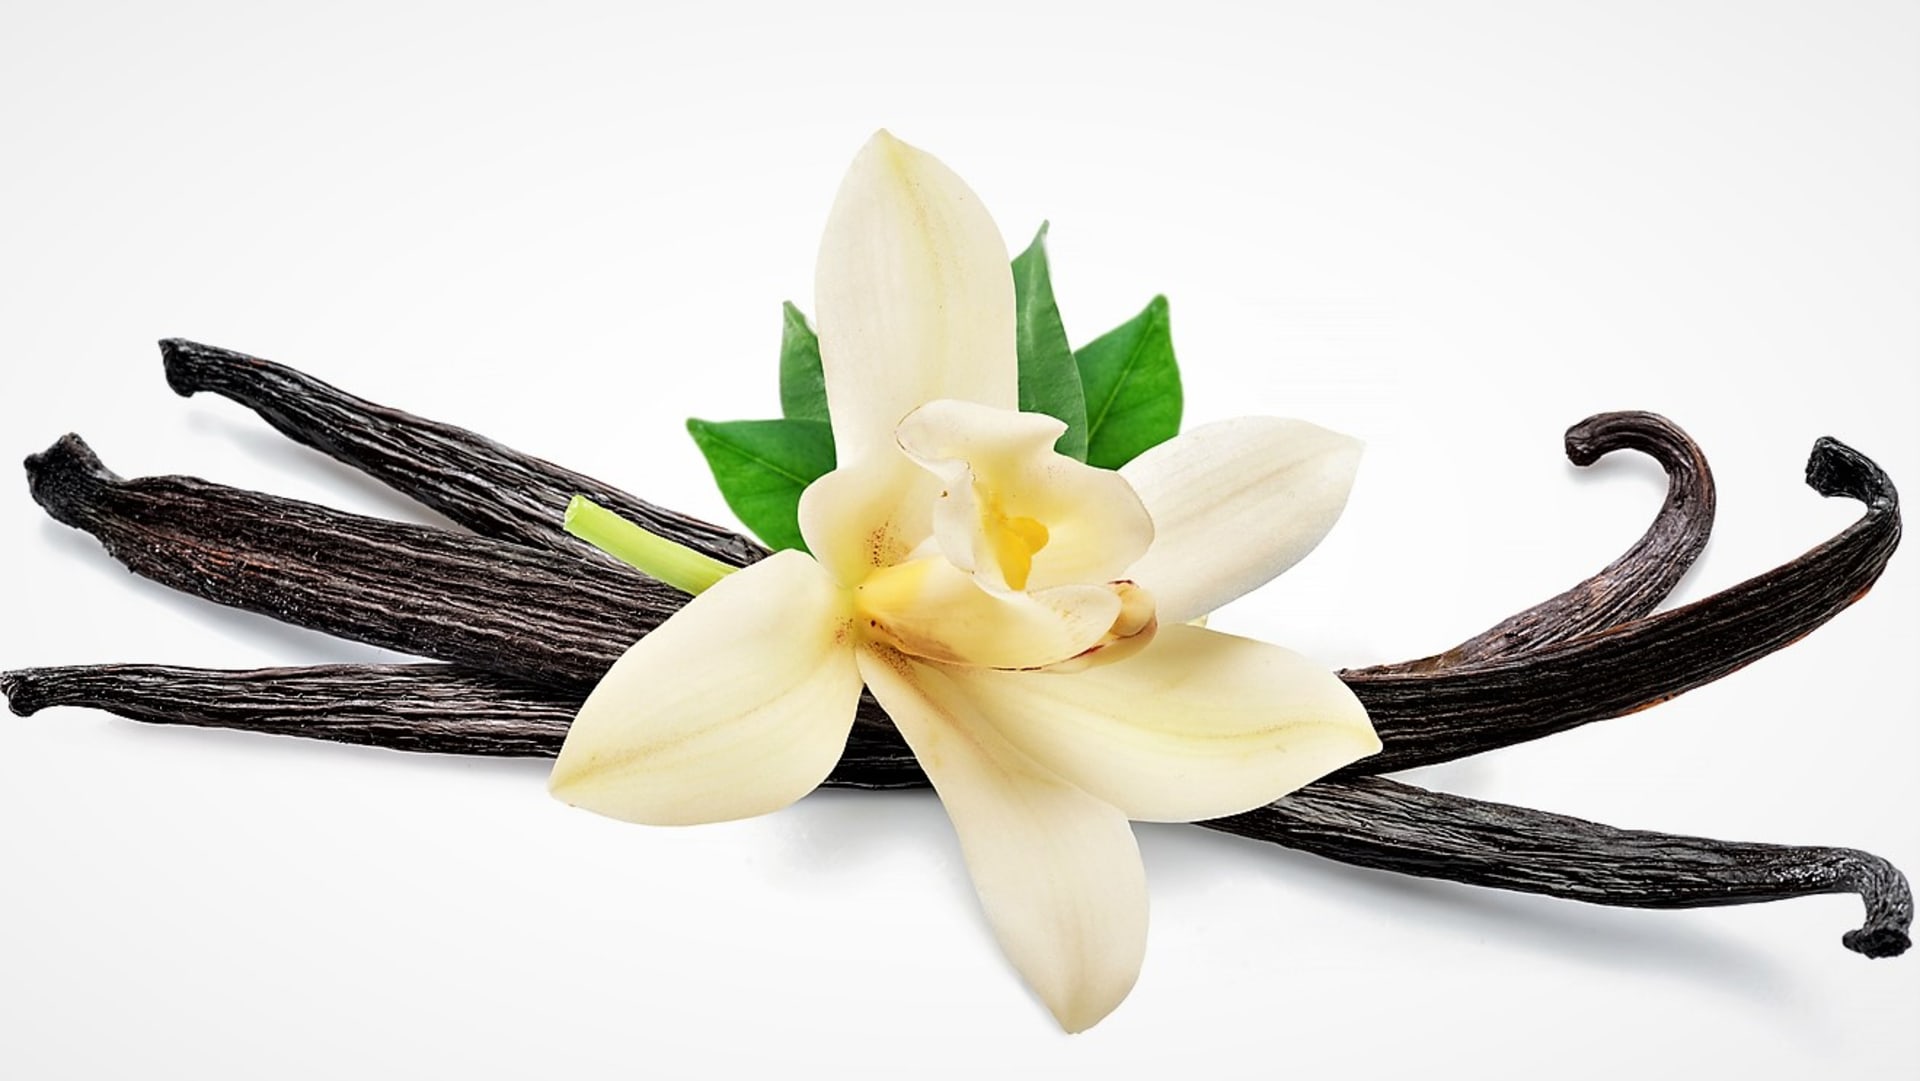 Pravá vanilka (vanilovník plocholistý Vanilla planifolia) je tropická popínavá orchidej původem z Mexika. Je to jediná orchidej, jejíž plody (tobolky) se používají jako koření.